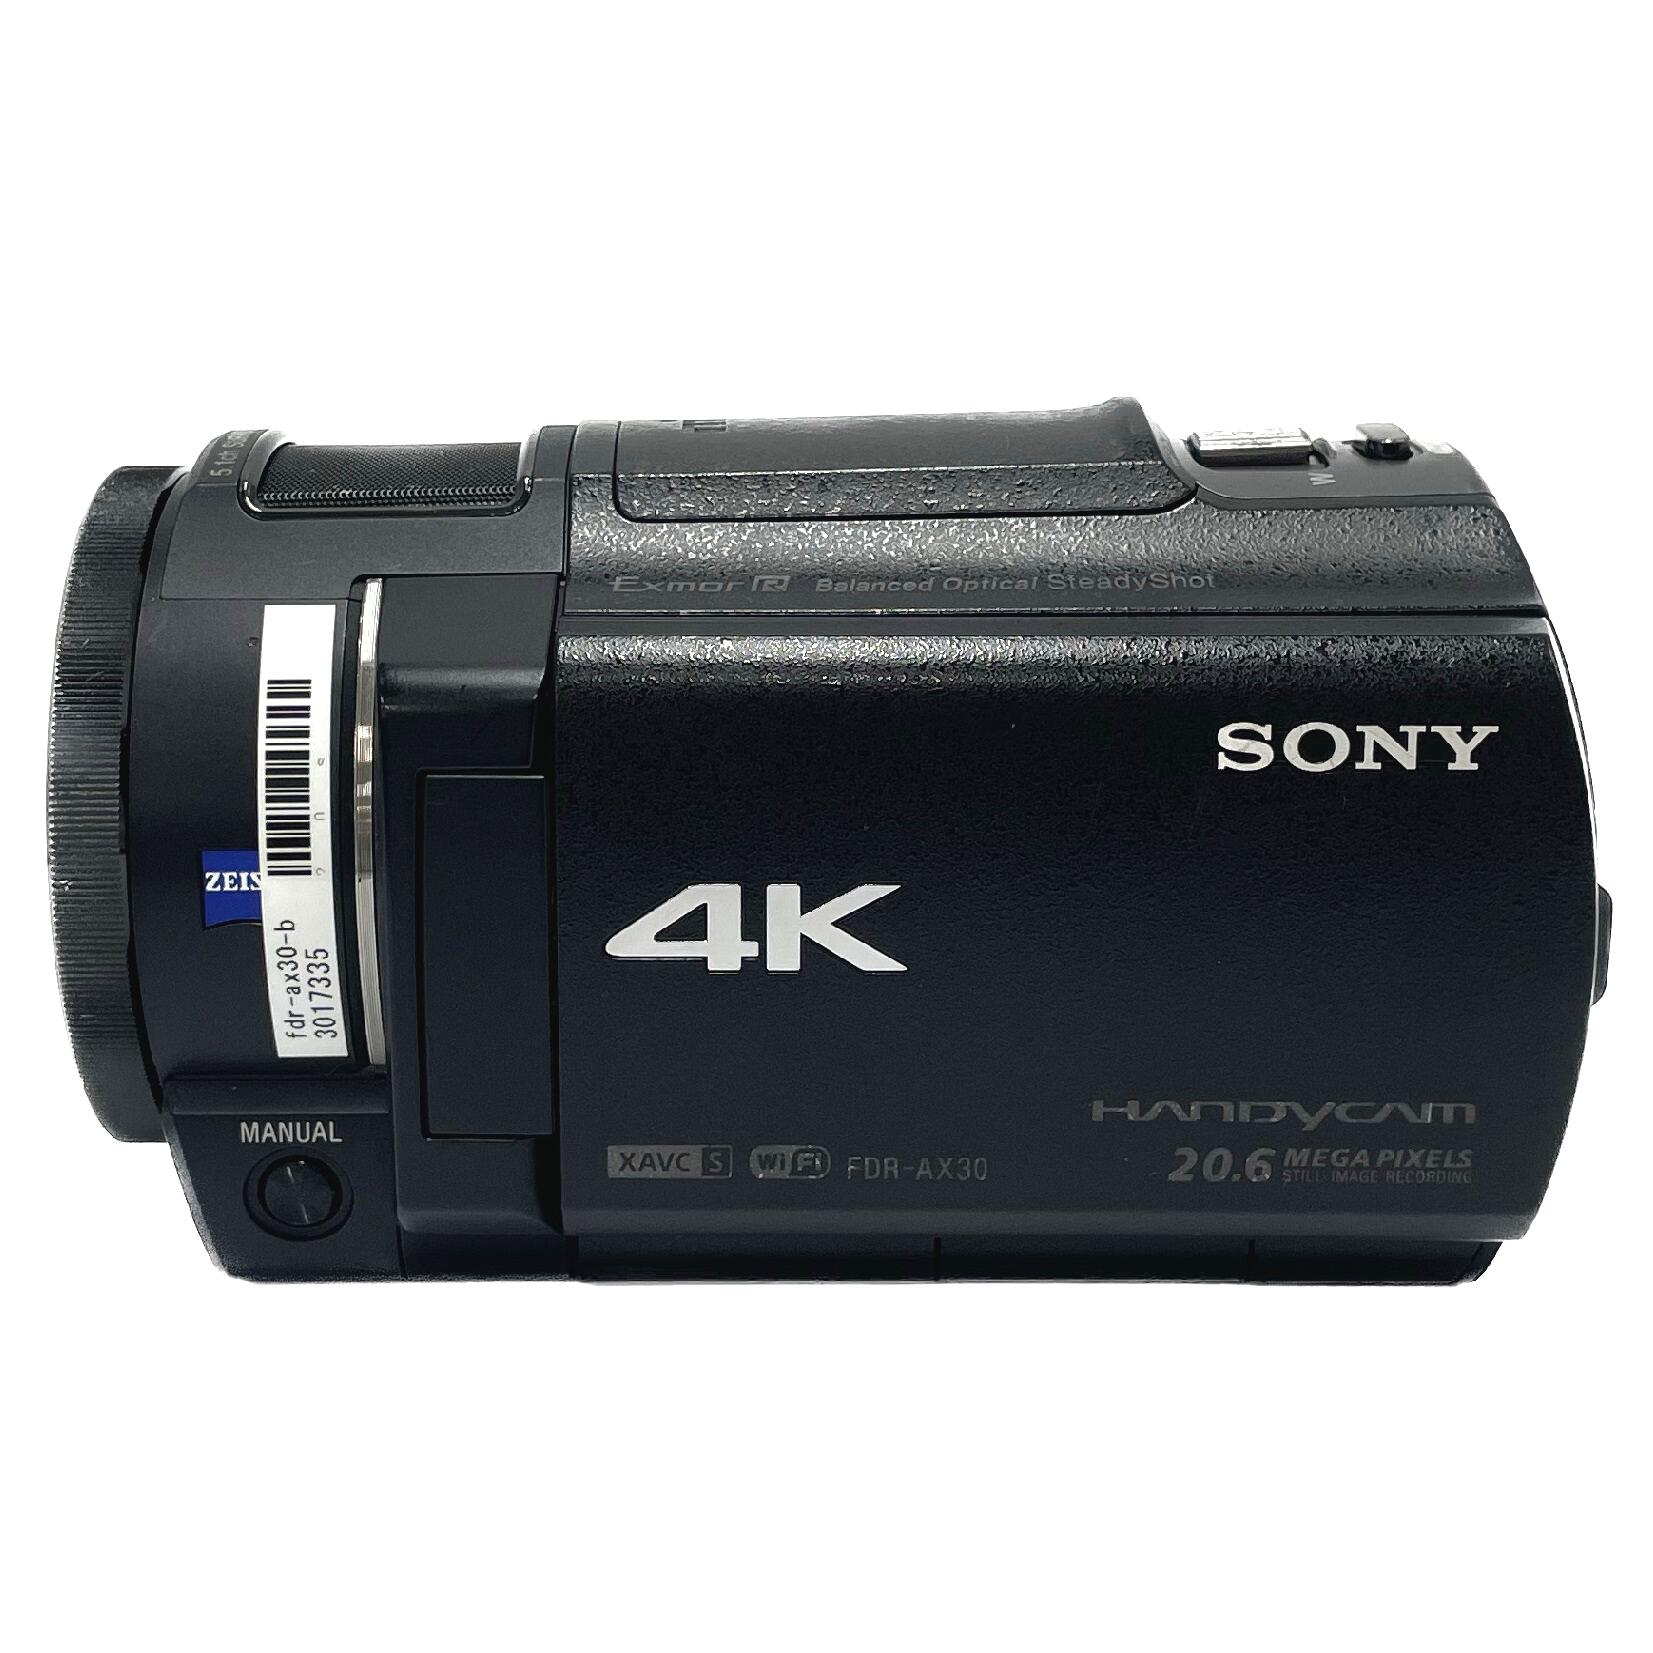 ボタニカル ミディアムベール SONY 4Kビデオカメラ Handycam FDR-AX30